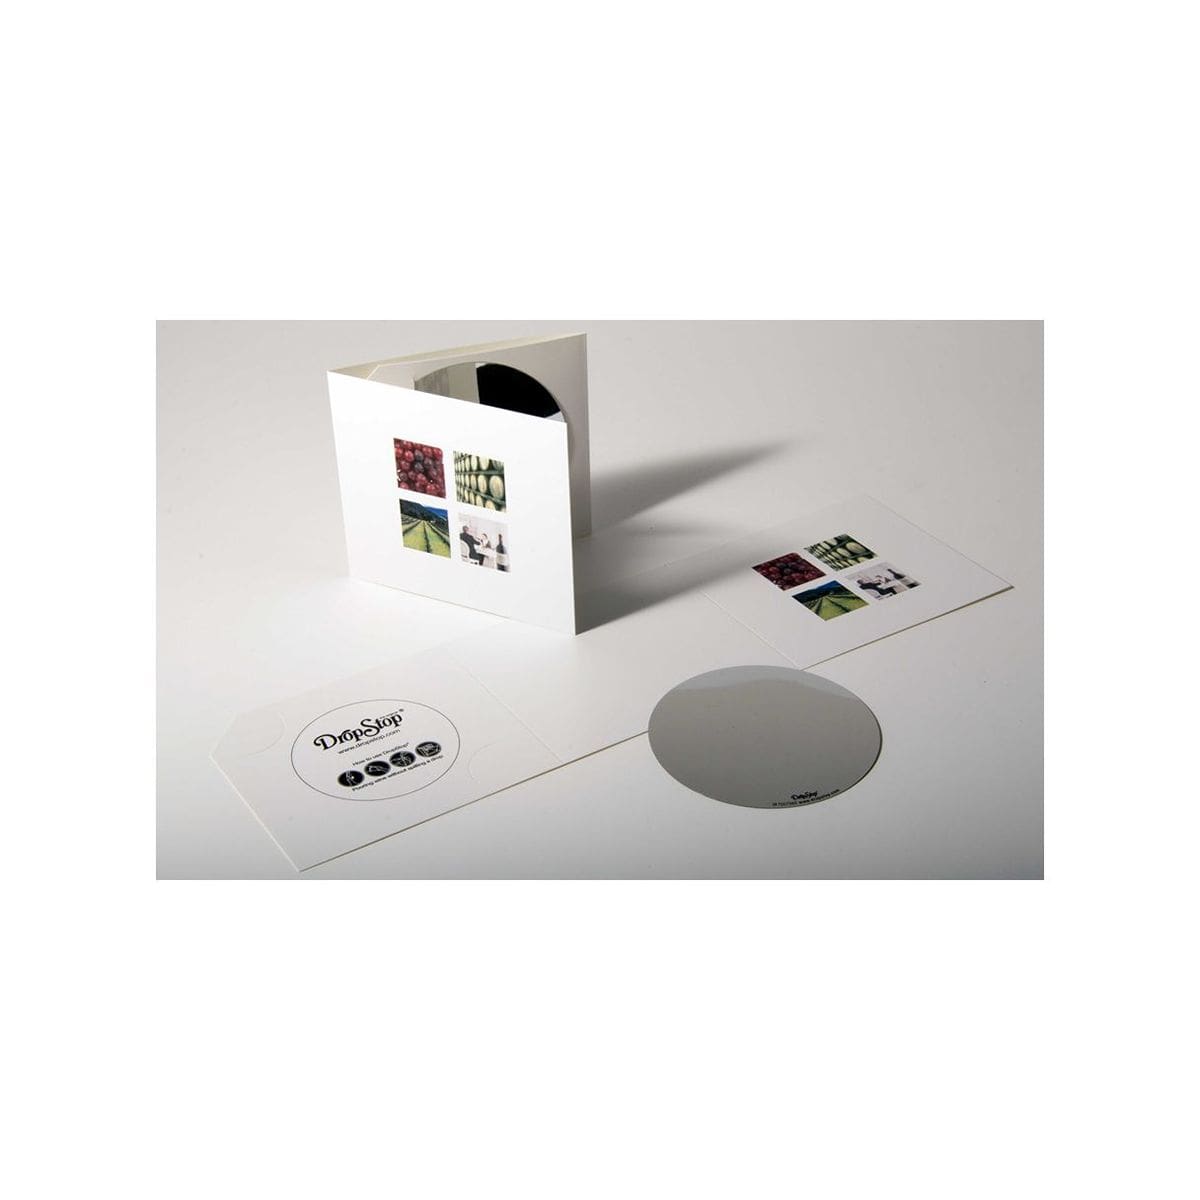 Embalagem de Cartão Tríptico com Dropstop incluído